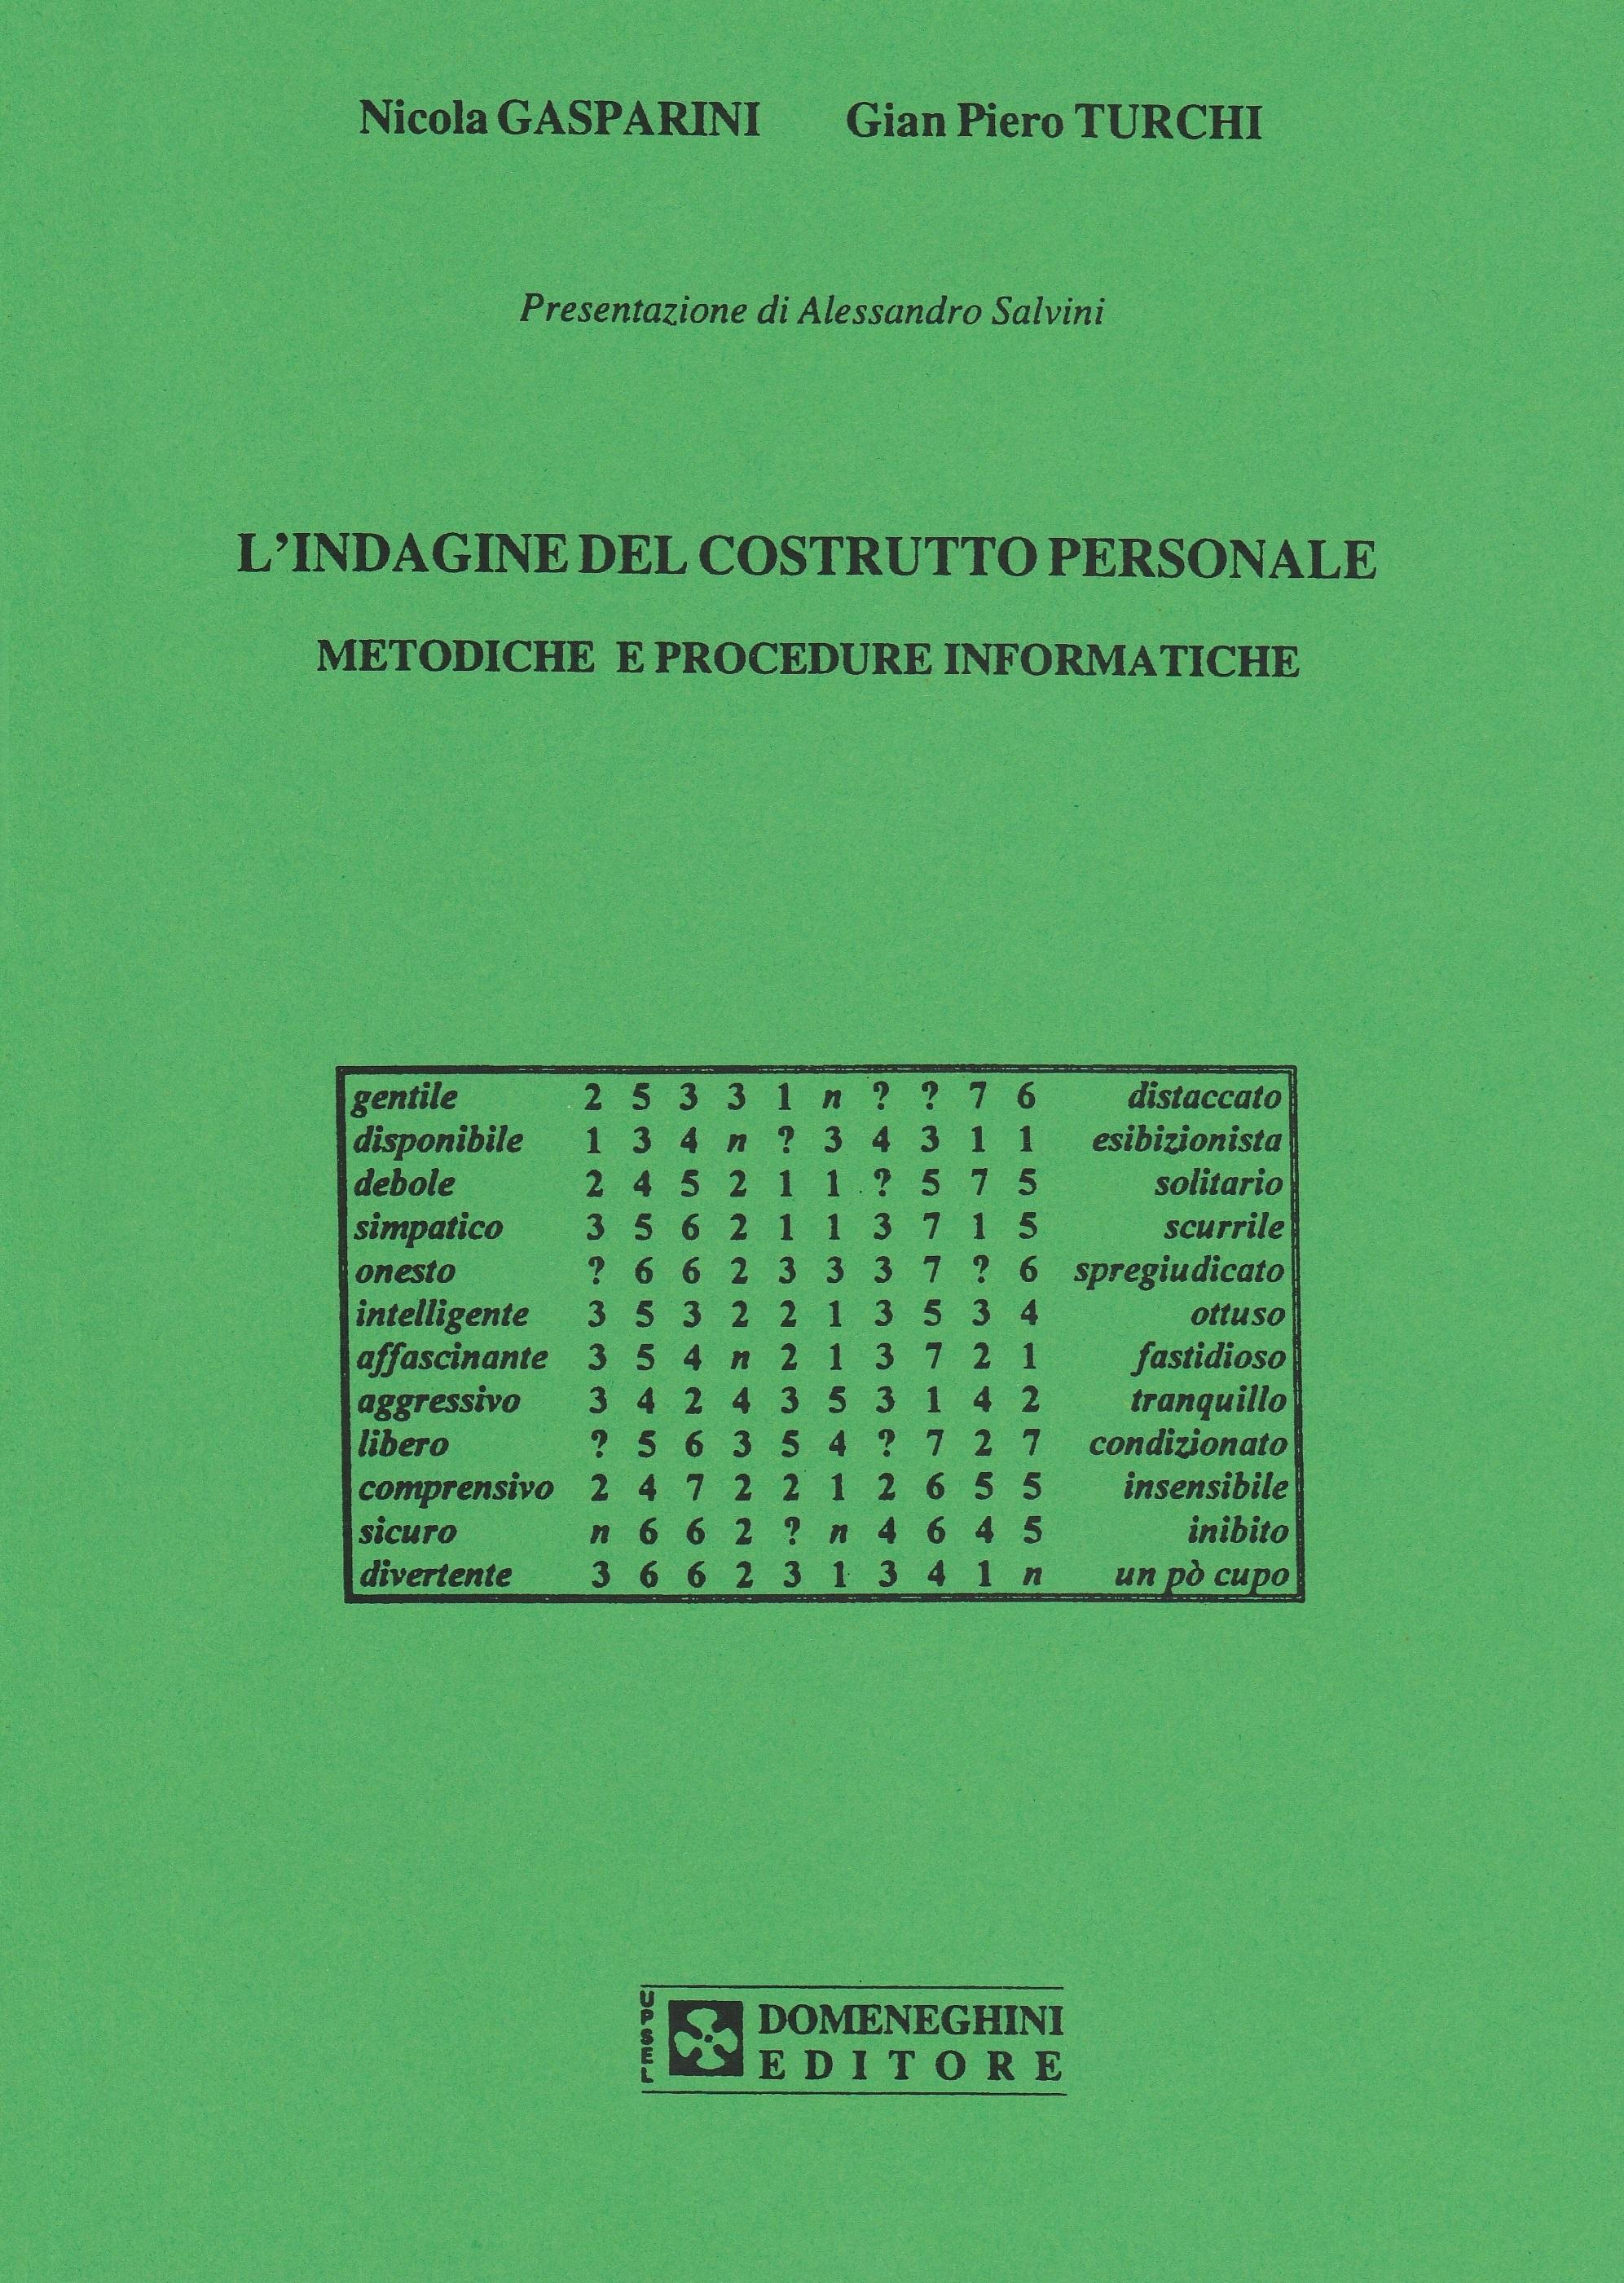 Turchi G. P., Gasparini N. L'indagine del costrutto personale. Metodiche e procedure informatiche